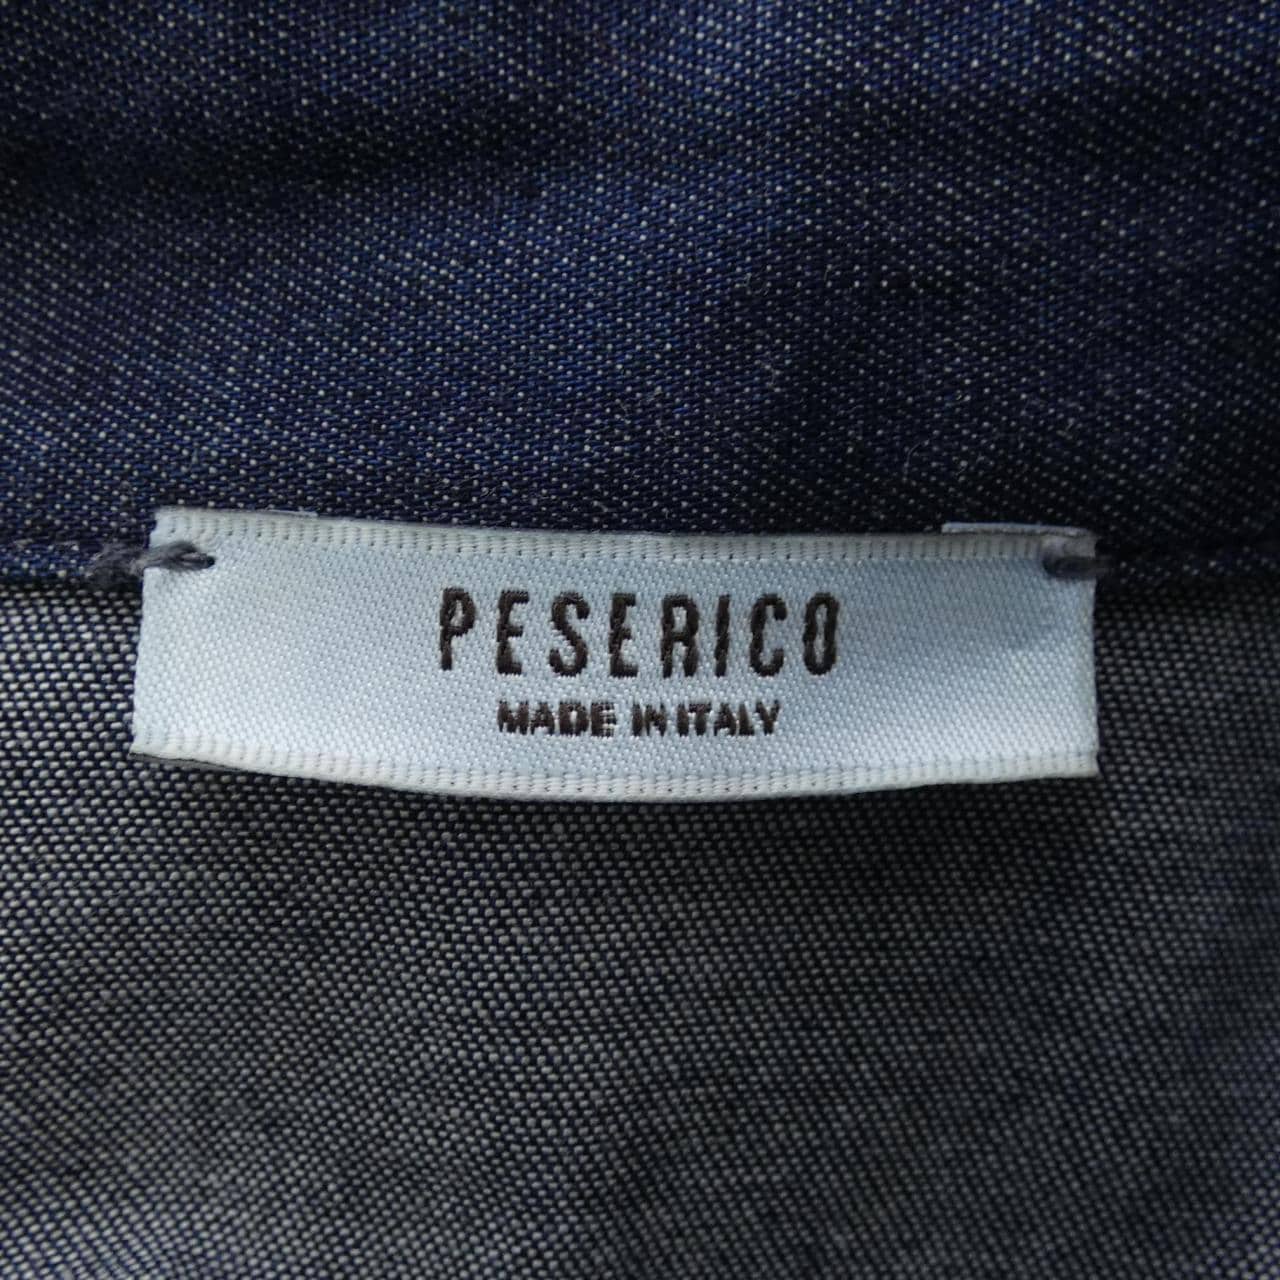 ペセリコ PESERICO シャツ